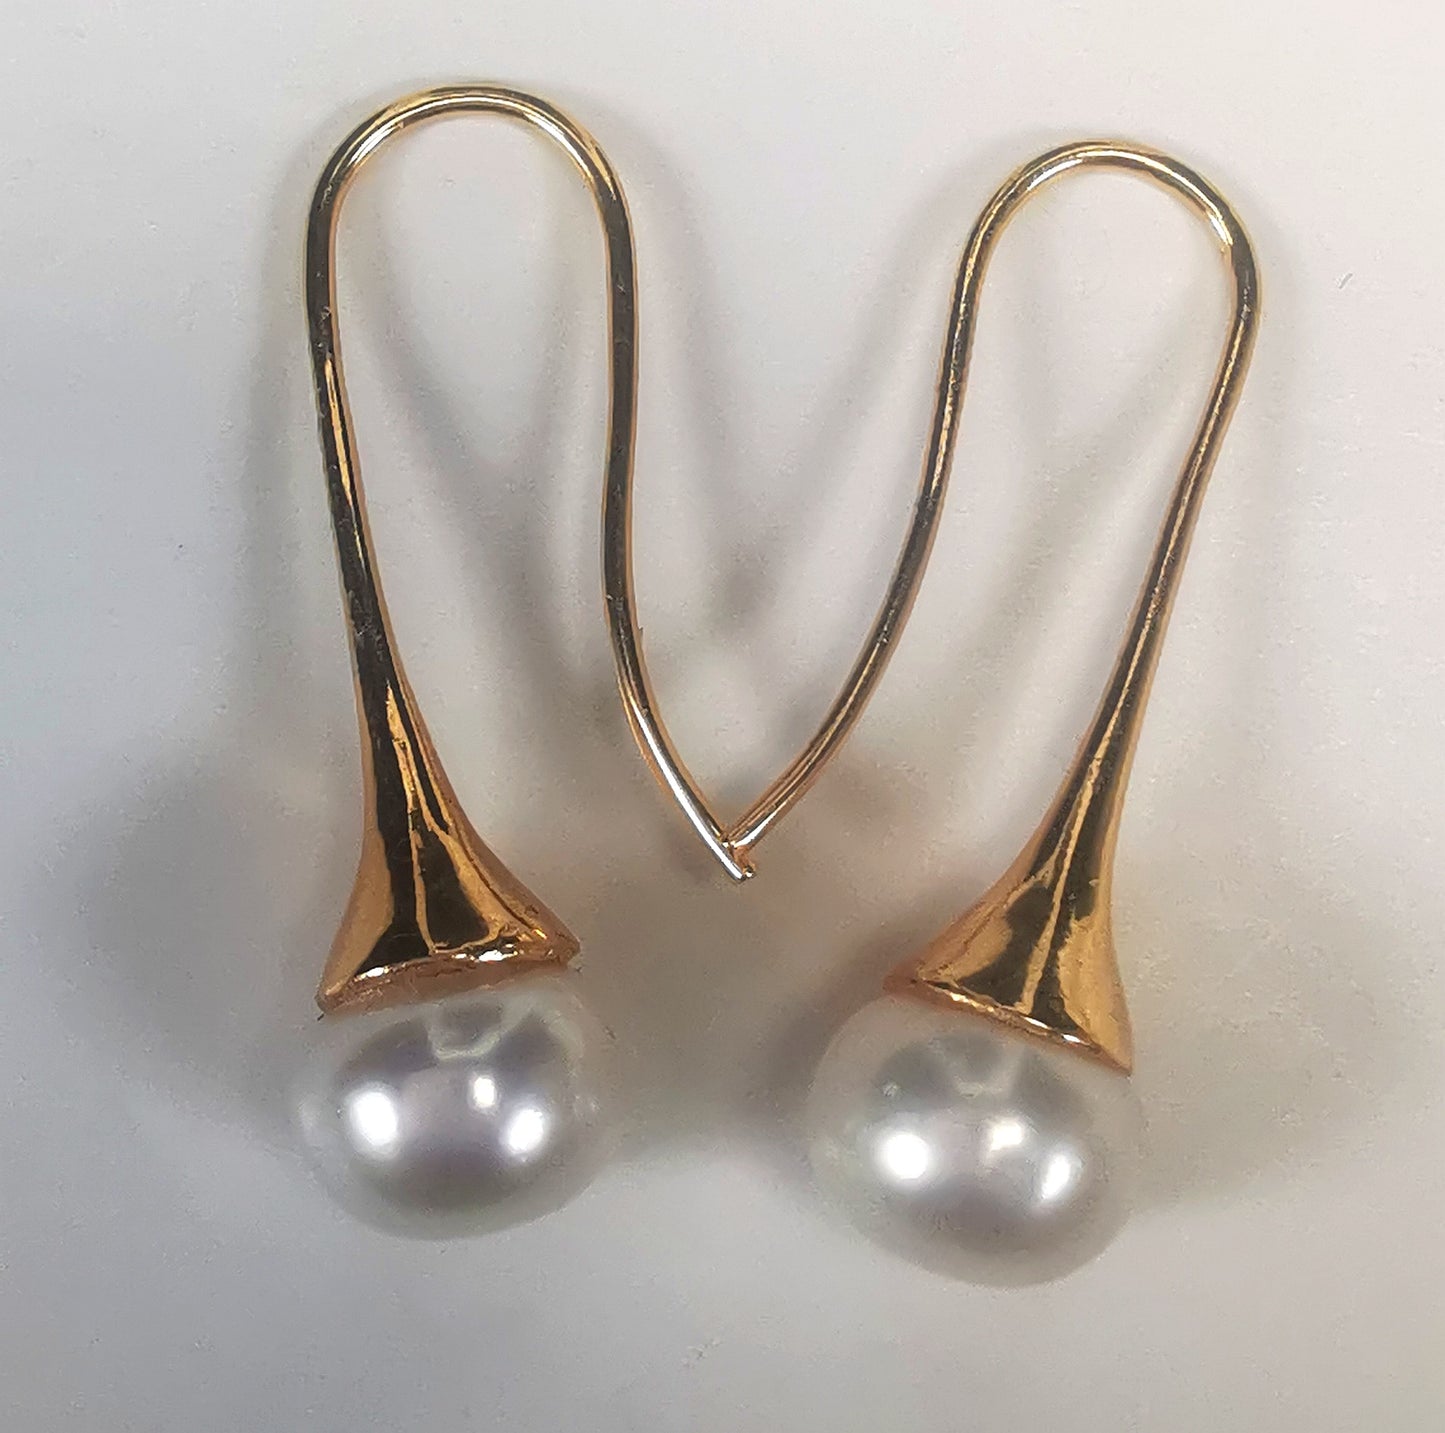 Boucles d'oreilles perles de culture blanches 9mm sur pendants longs plaqués or. Présentées cote o cote, perles en bas, boucle de gauche, pendant tourné vers la droite, celle de droite vers la gauche, sur fond blanc. Vue de dessus.